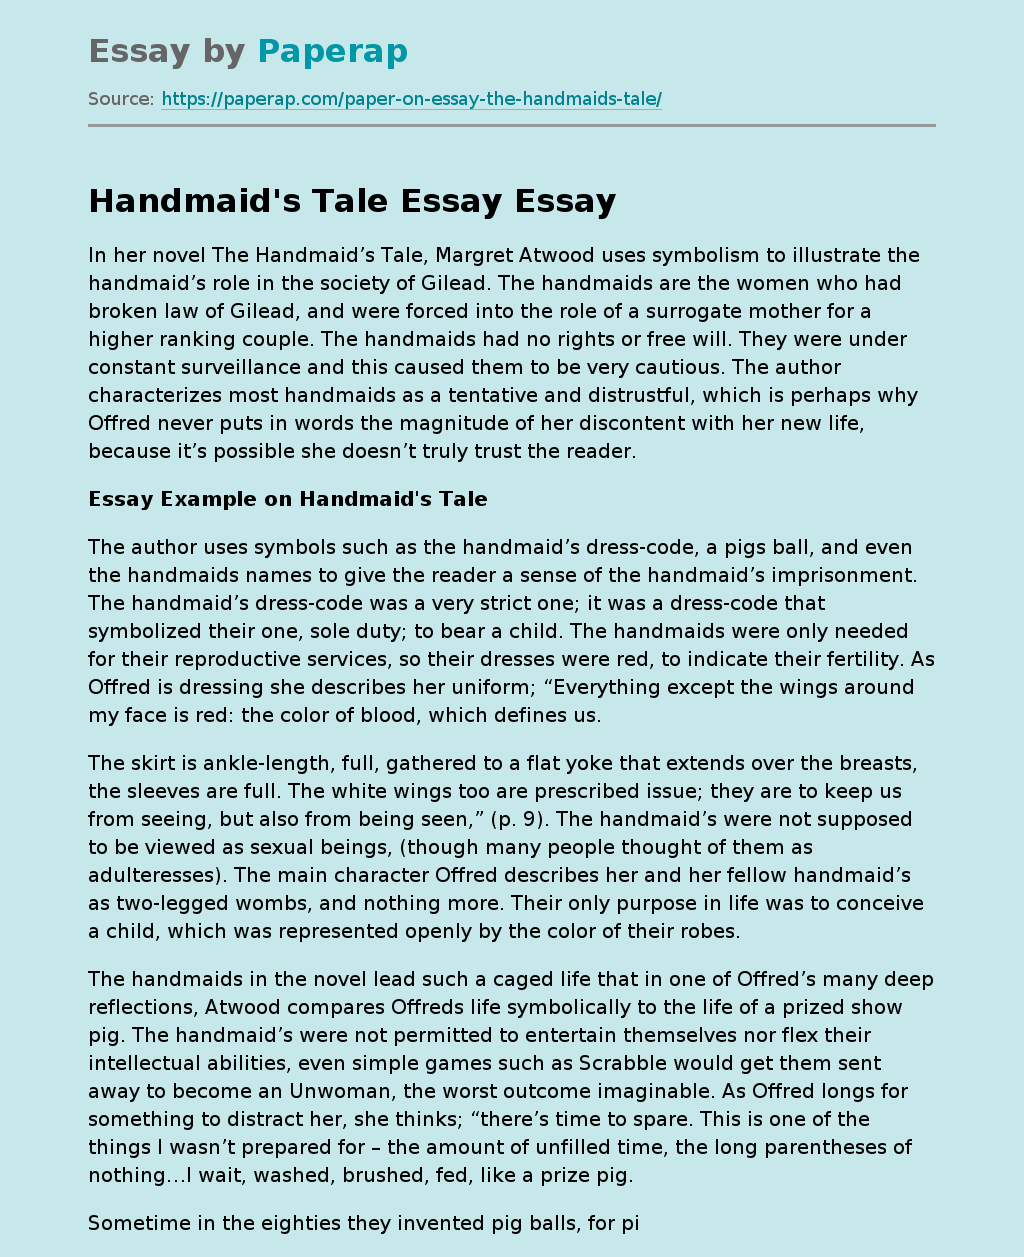 Handmaid's Tale Essay